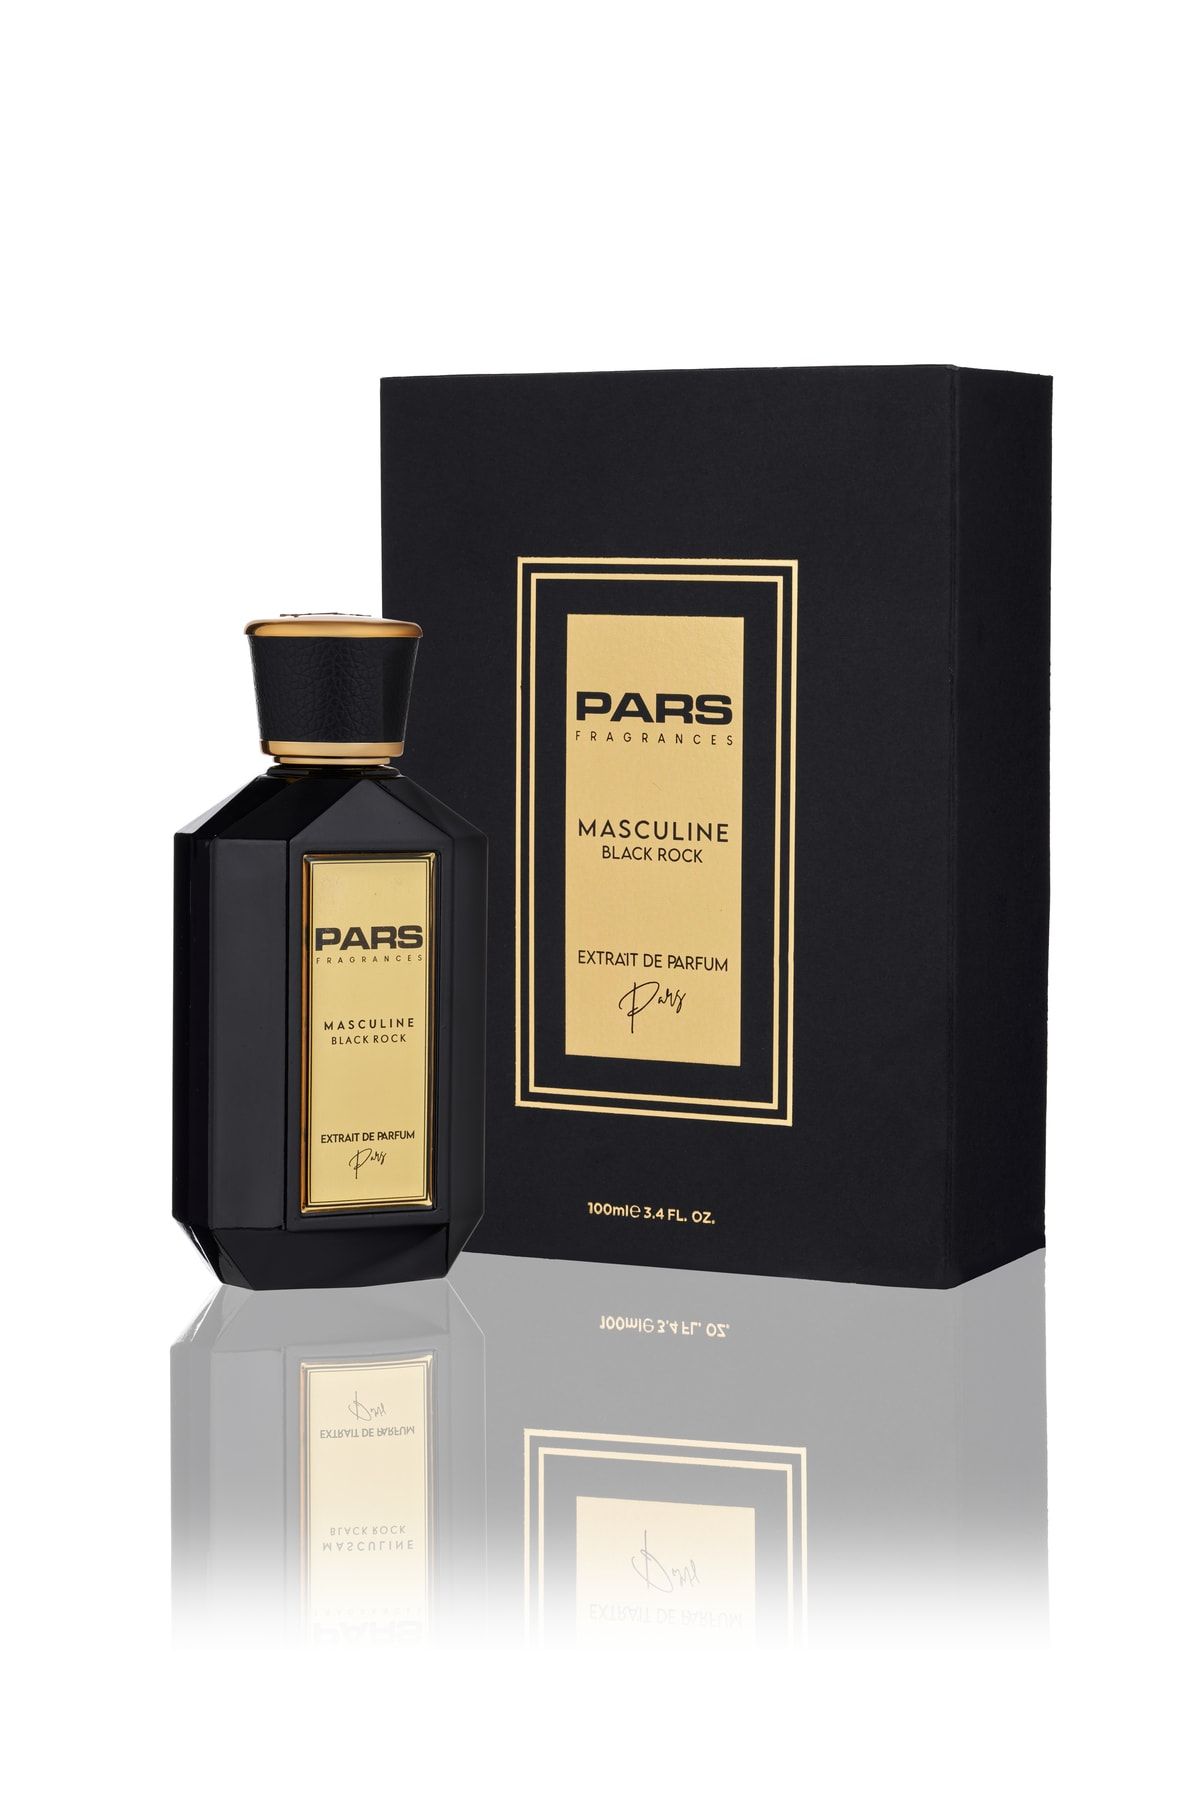 Pars Black Rock Masculine Extrait De Parfum 100ml